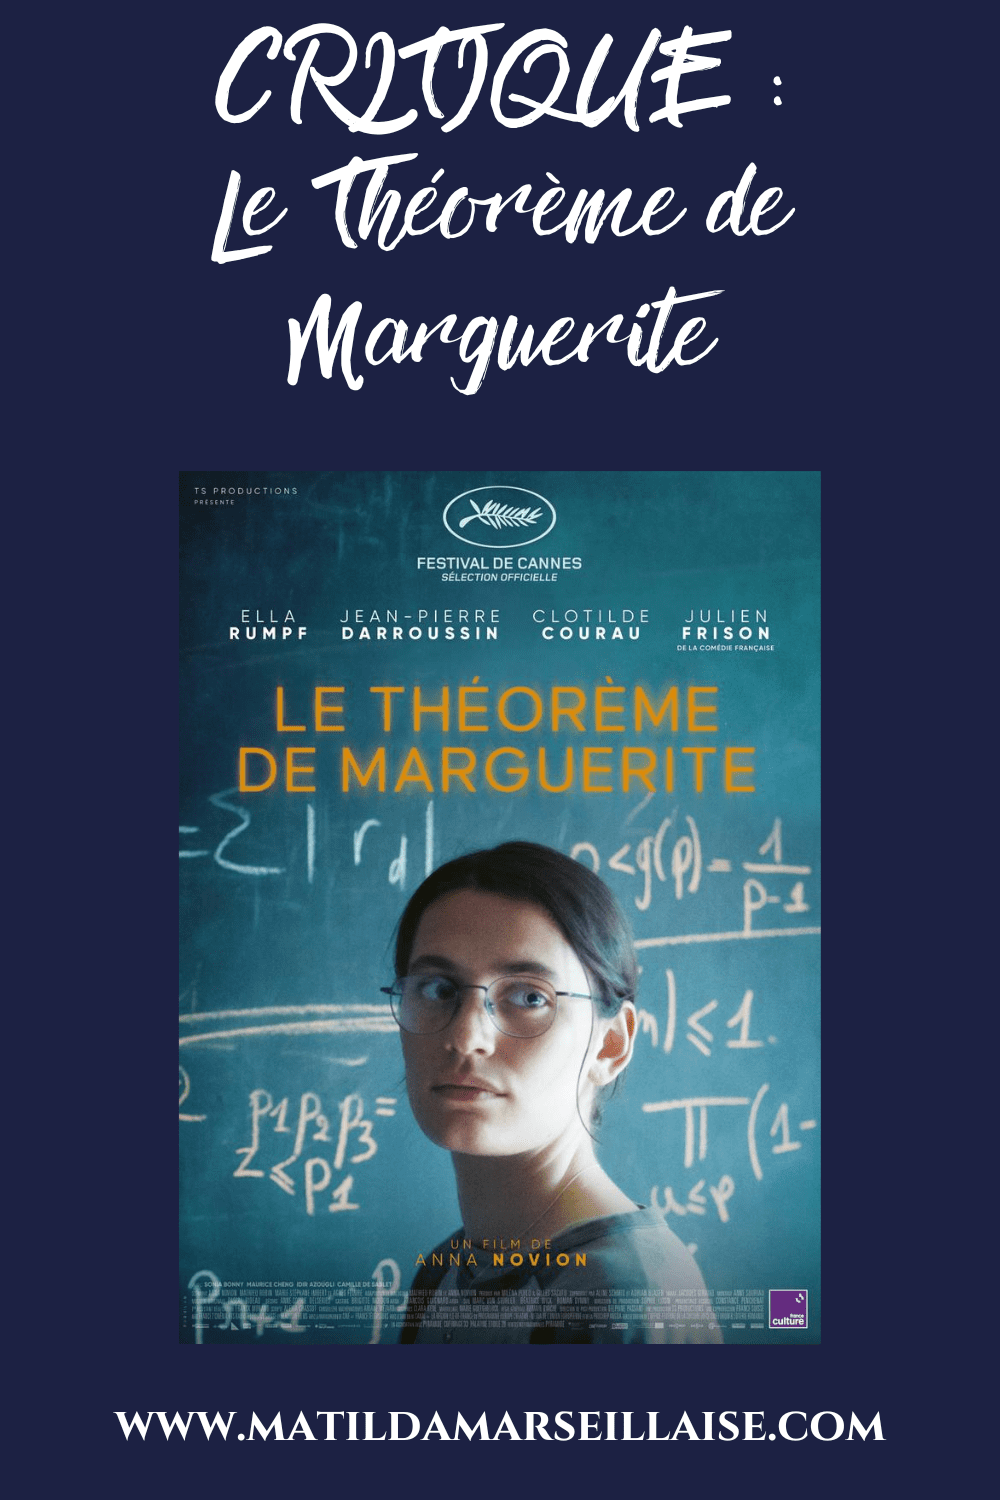 Le théorème de Marguerite est un film sur la recherche de soi quand tout semble perdu